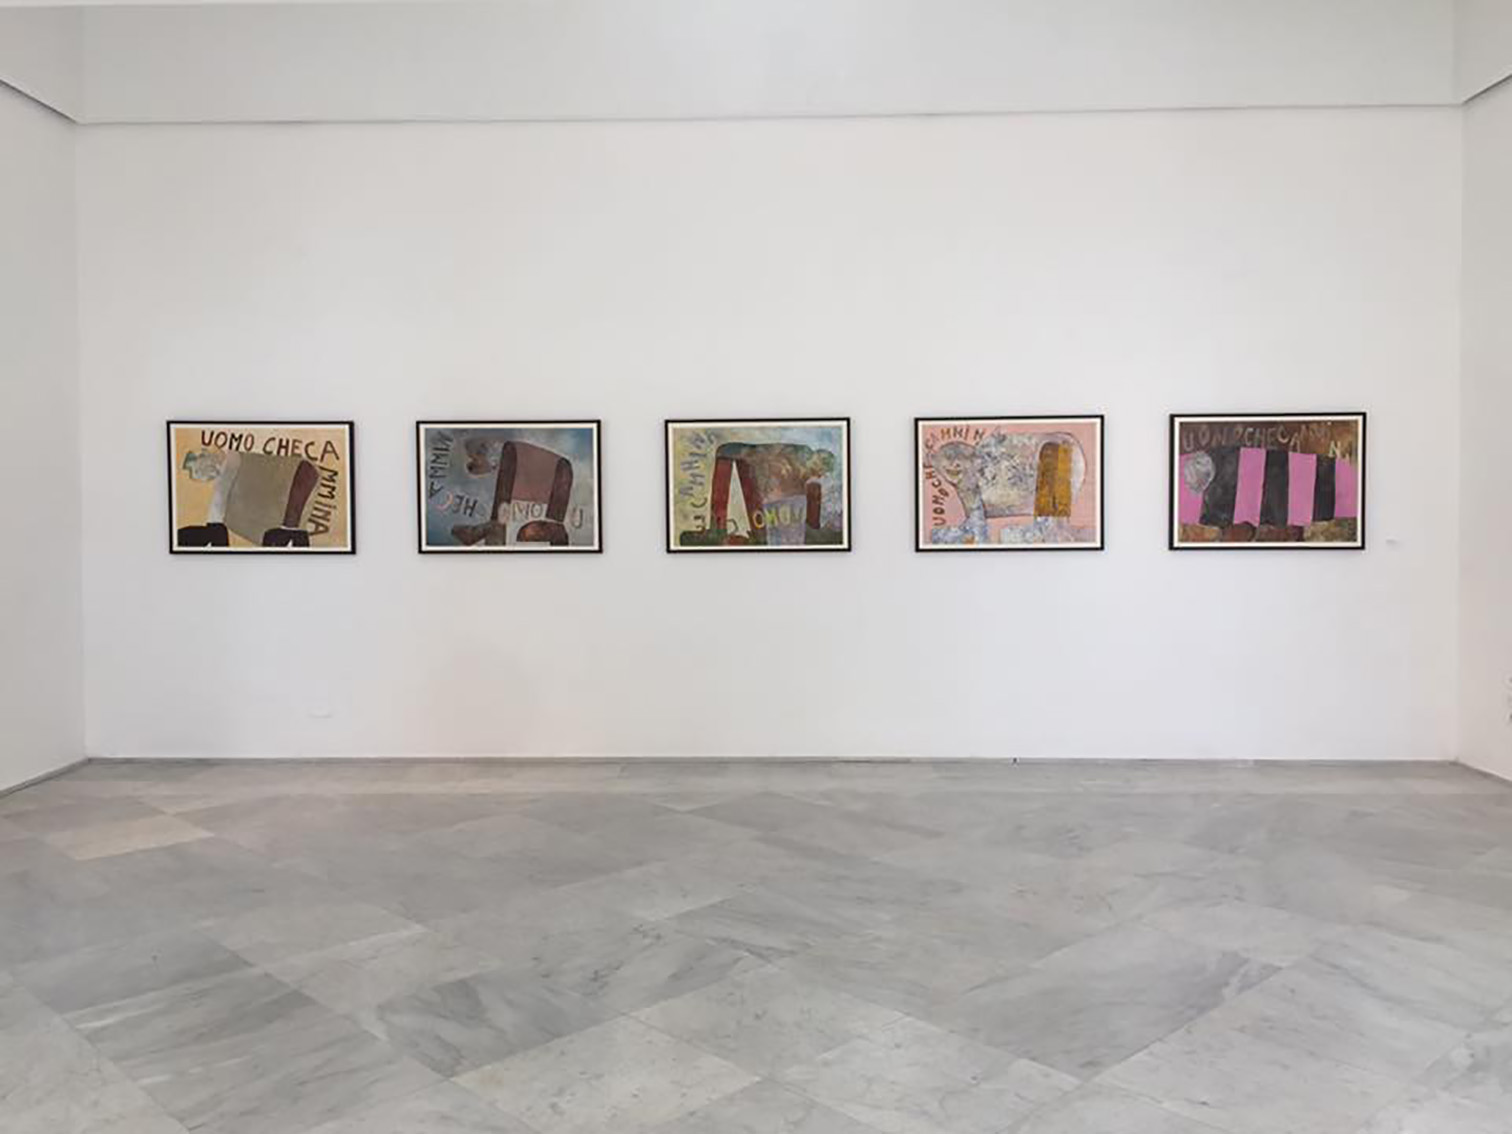 Gianni Pisani – Uomo che cammina - installation view at PAN, Napoli 2016